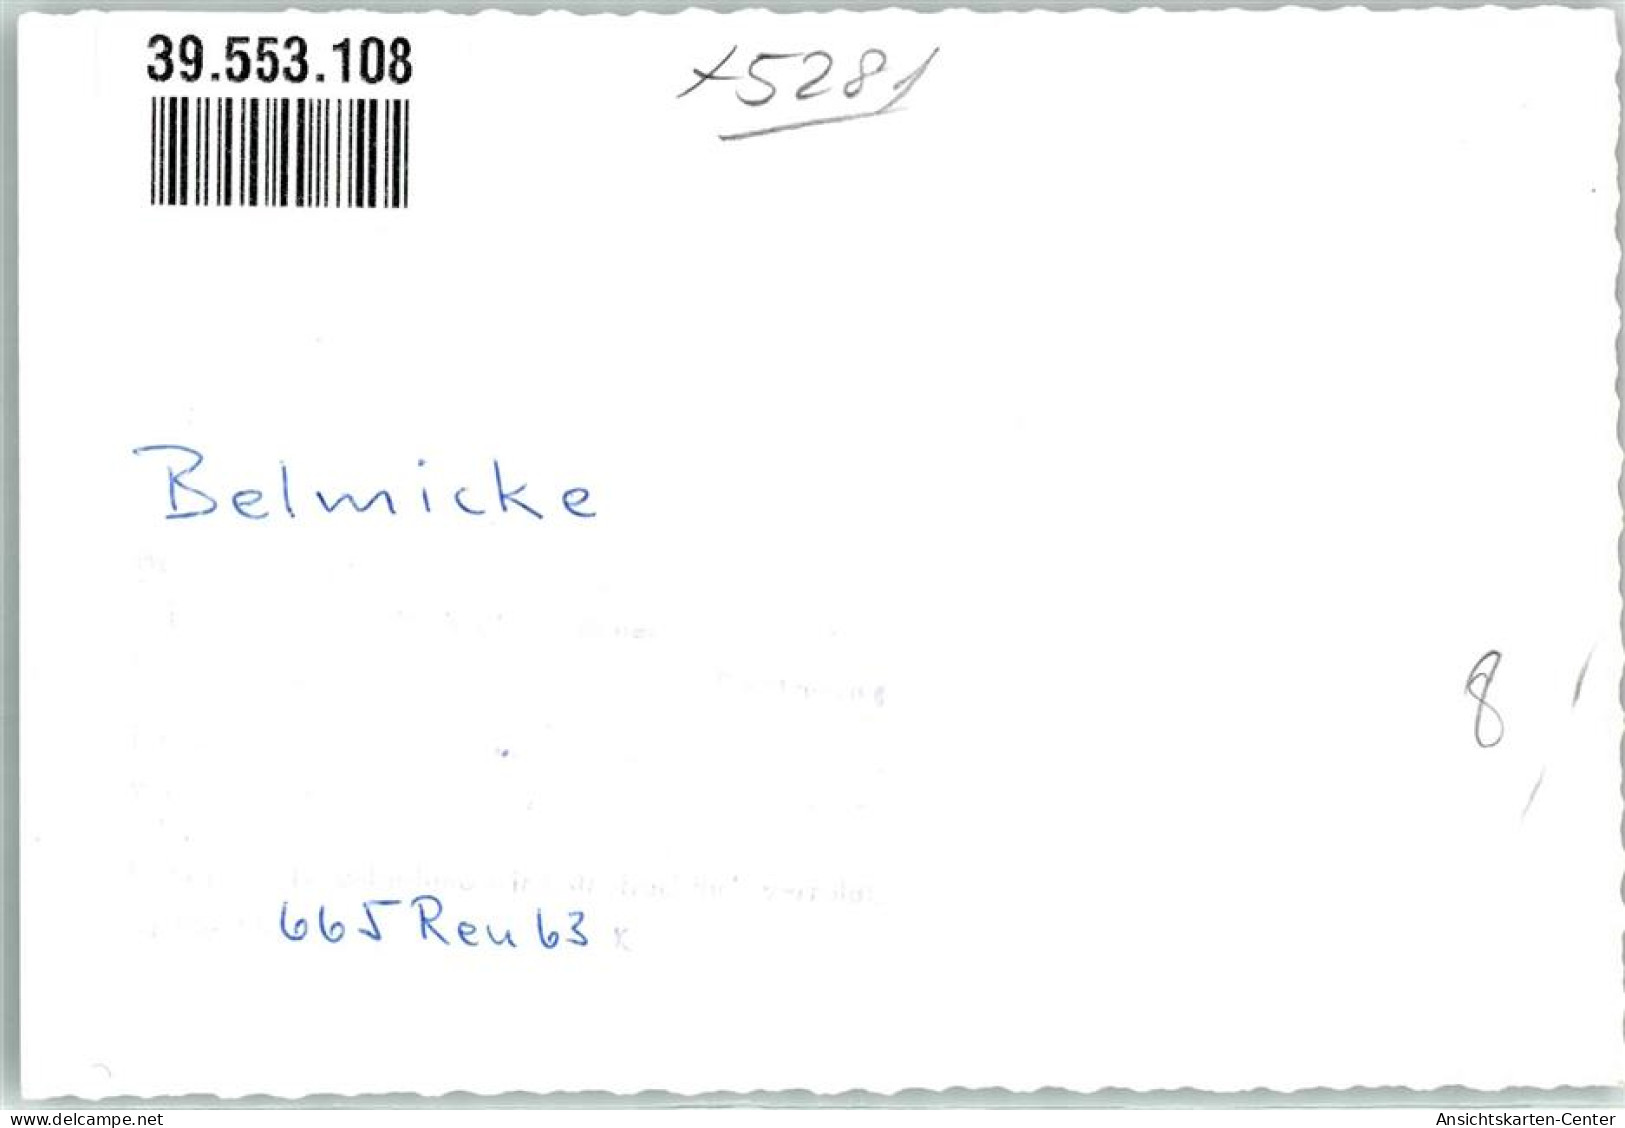 39553108 - Belmicke - Bergneustadt